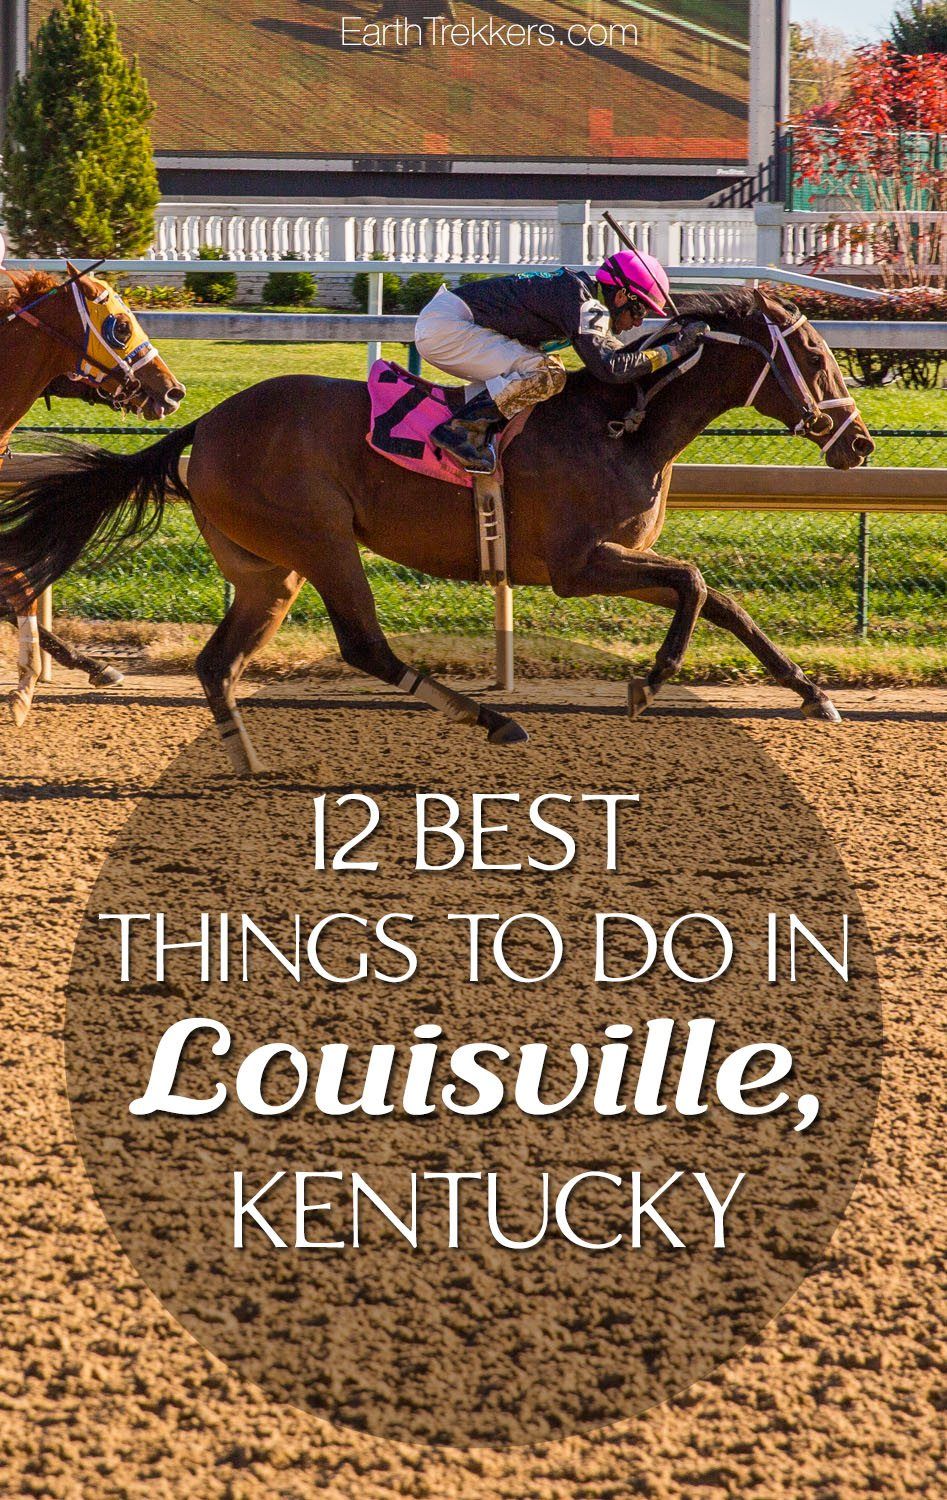 Best things to do in Louisville Kentucky